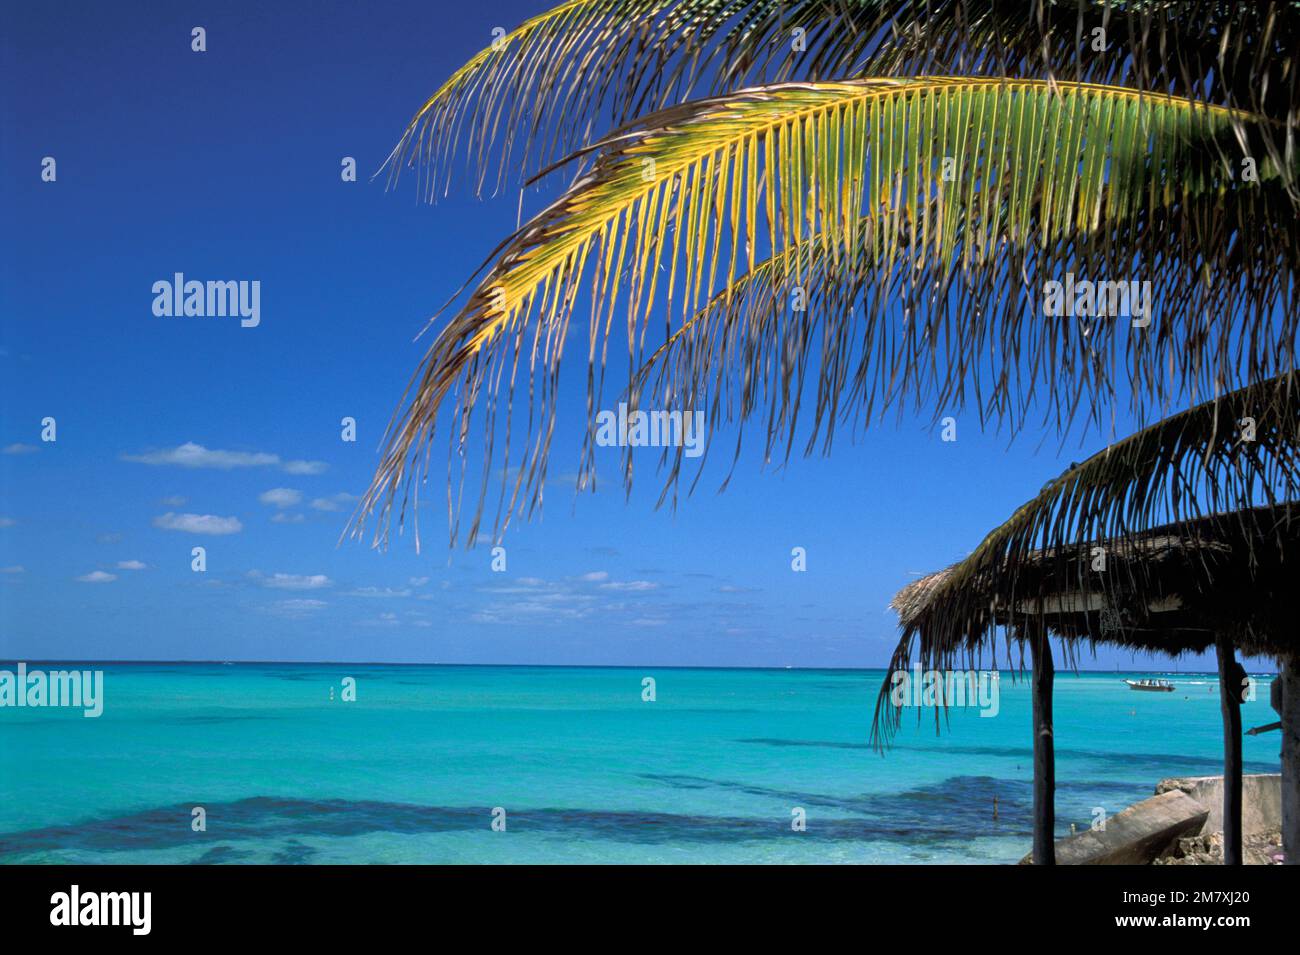 Mexico, Quintana Roo, Isla Mujeres, Playa Norte, Stock Photo